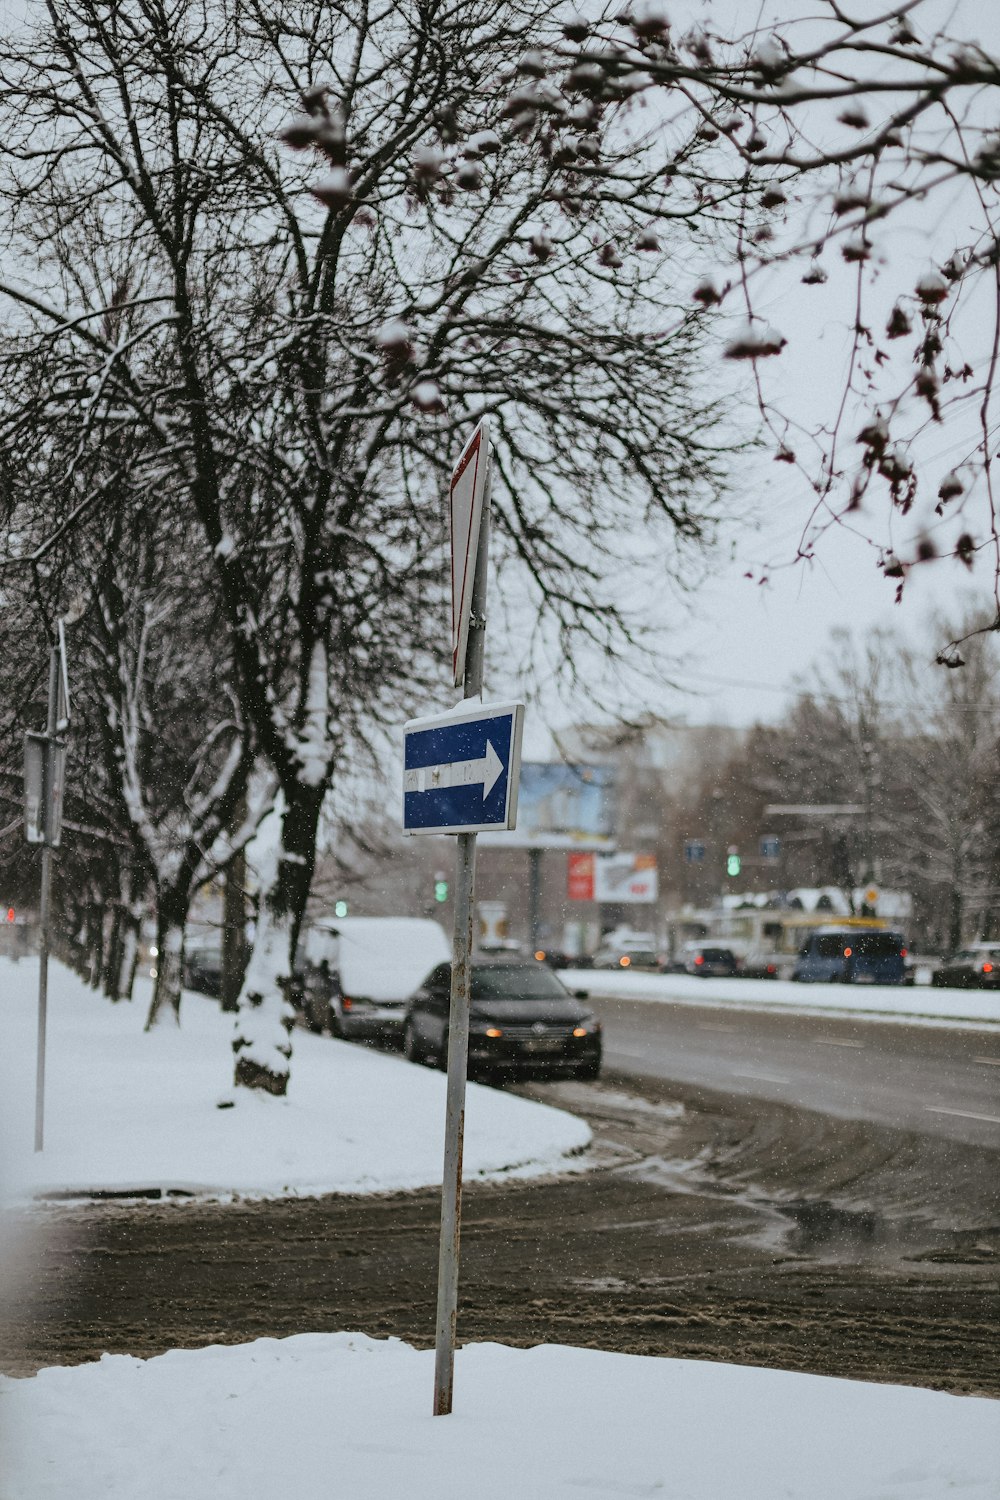 a street sign on a snowy street